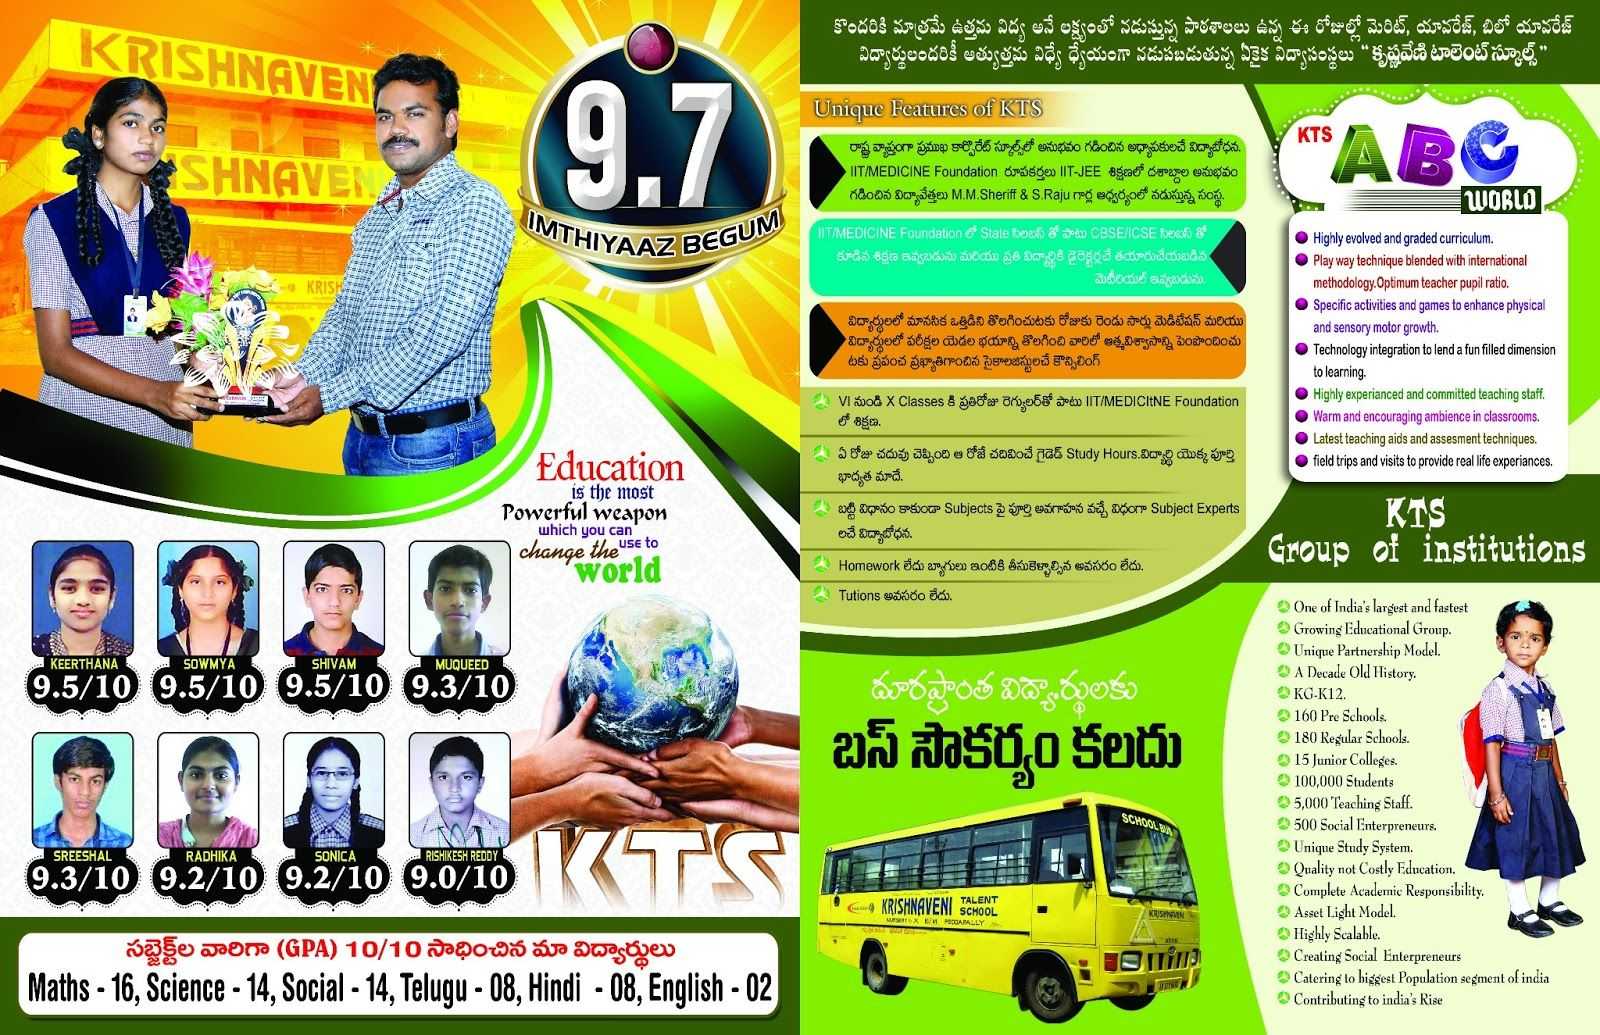 Krishnaveni School Brochure Template | Brochures In 2019 Inside Play School Brochure Templates